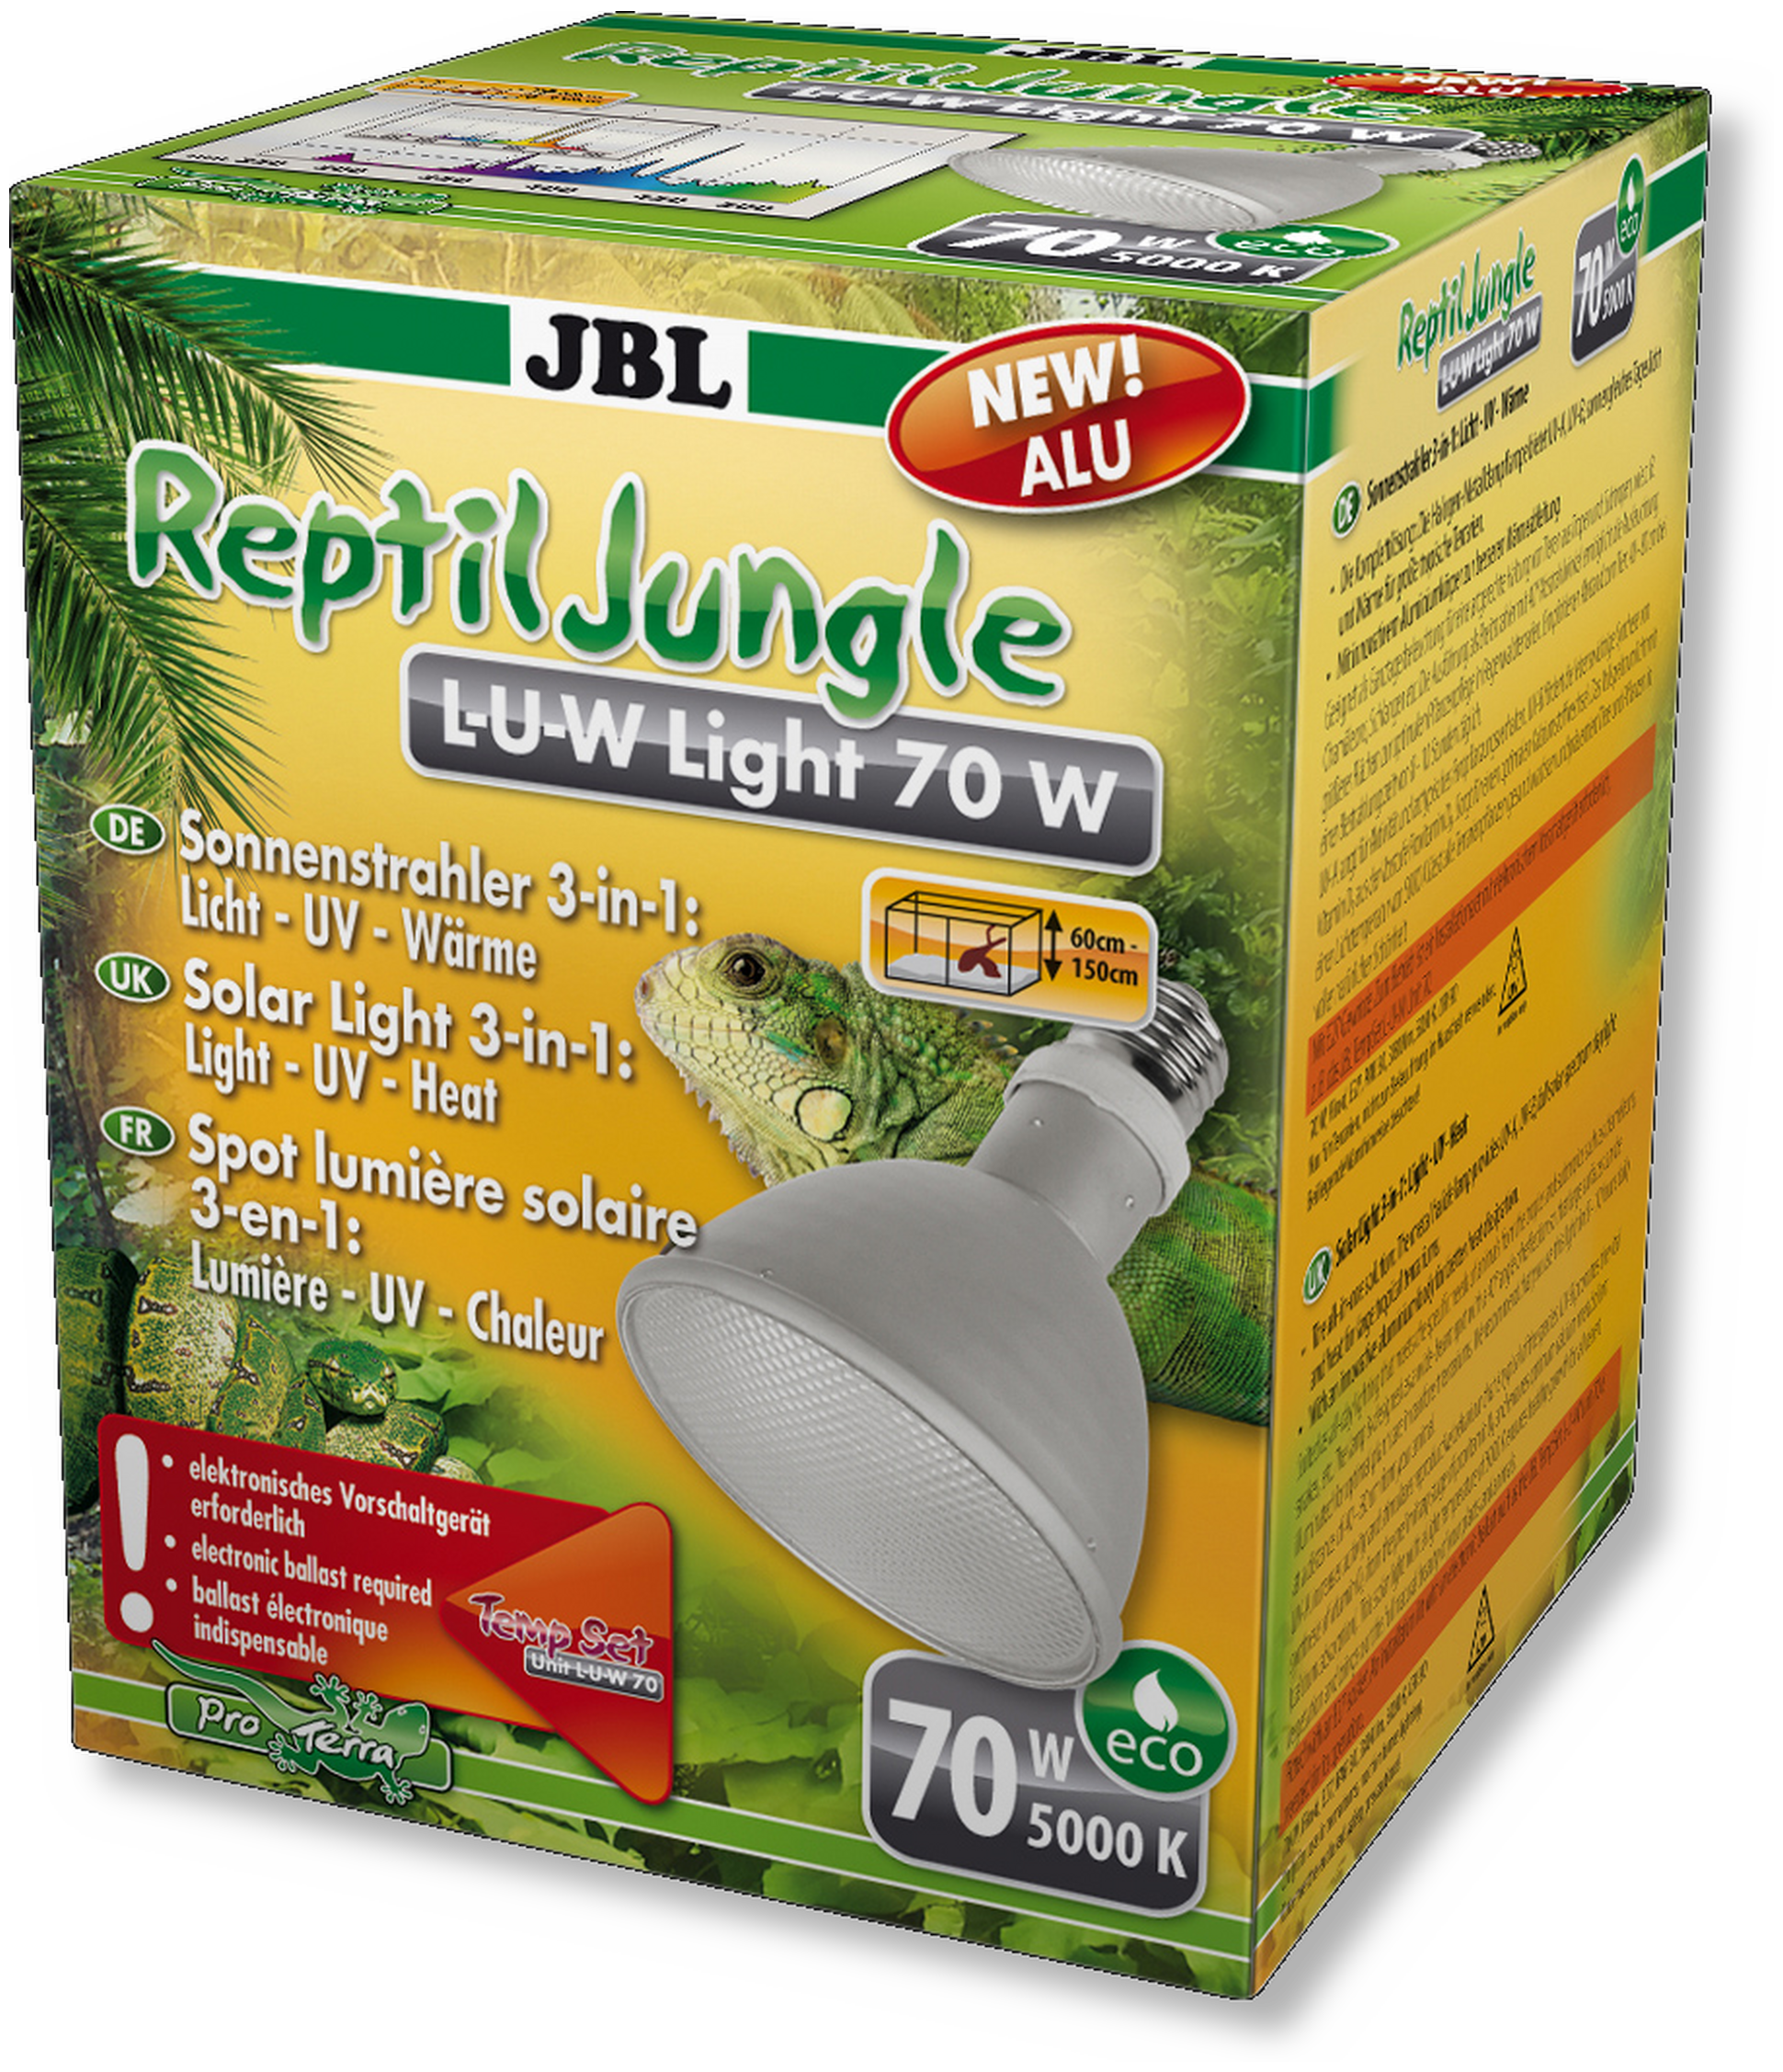 JBL ReptilJungle L-U-W Light alu 70W